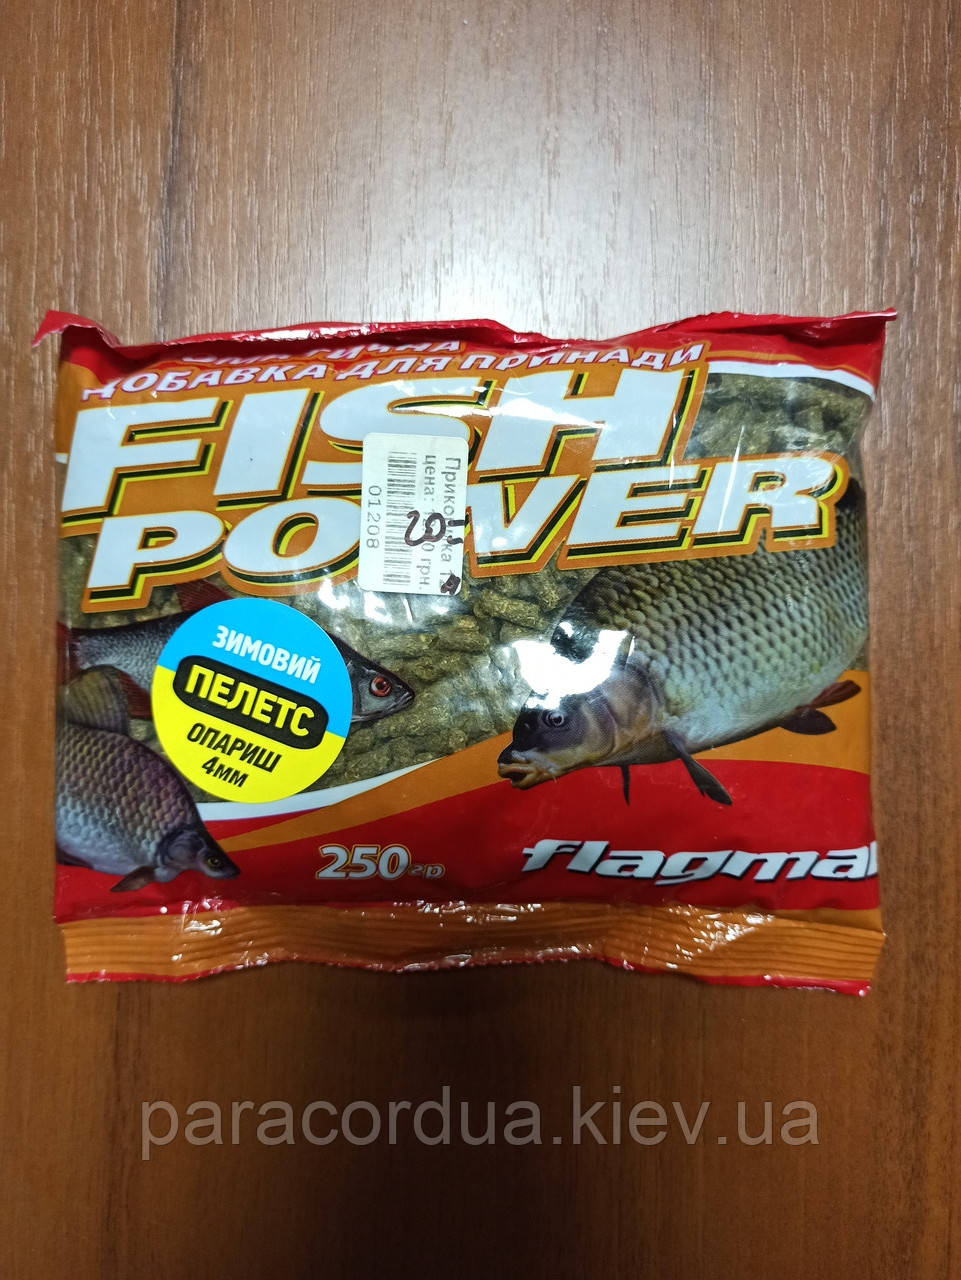 Fish Power, Зимовий, 250гр